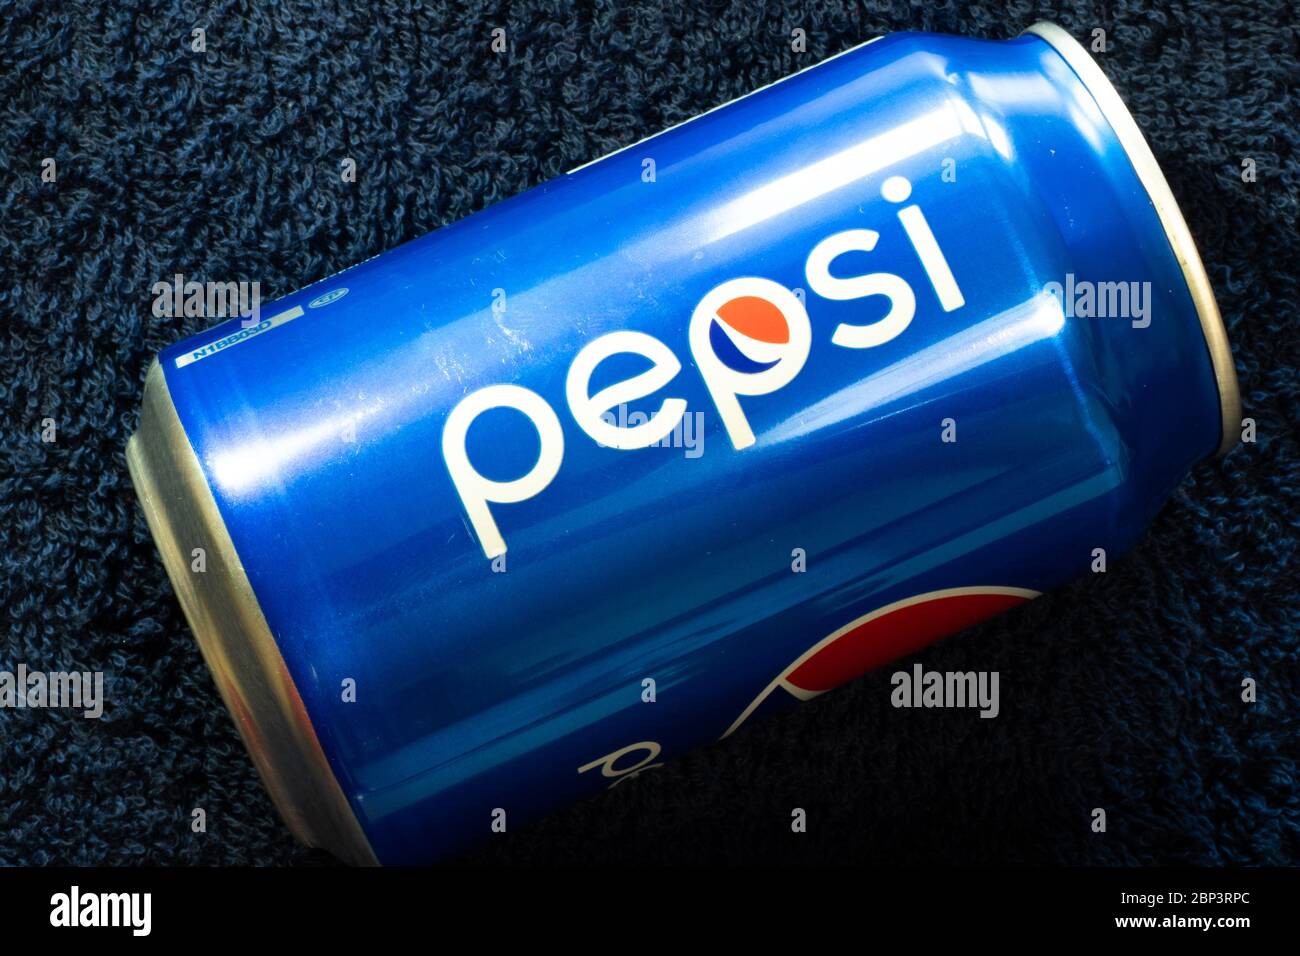 New York, USA - 15 maggio 2020: Vista dall'alto della lattina di Pepsi. Logo del marchio, editoriale illustrativo Foto Stock